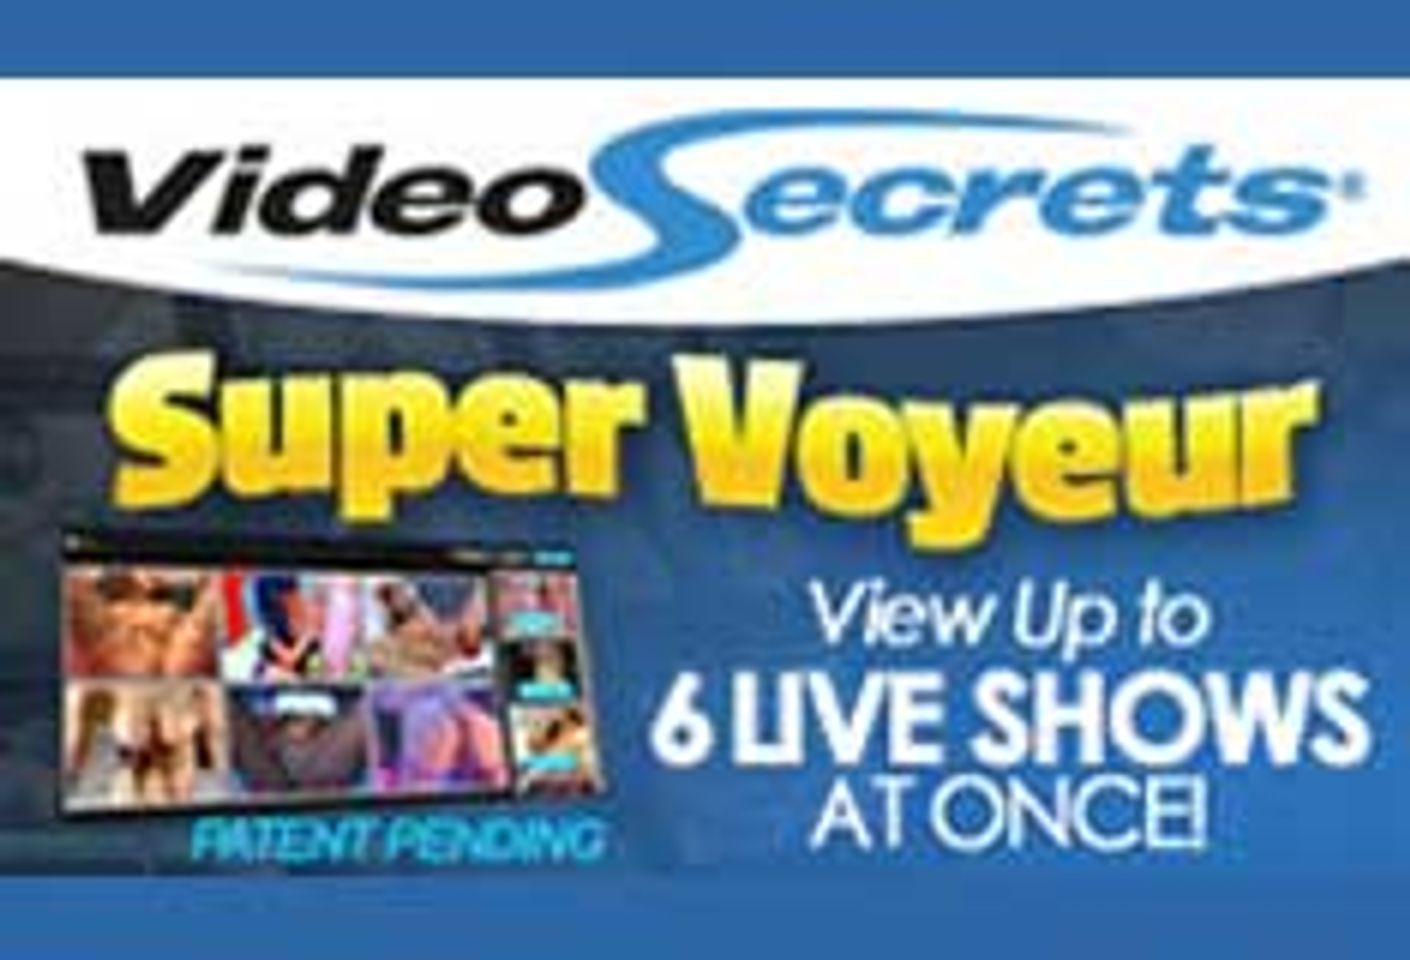 Video Secrets Launches 'Super Voyeur' Technology